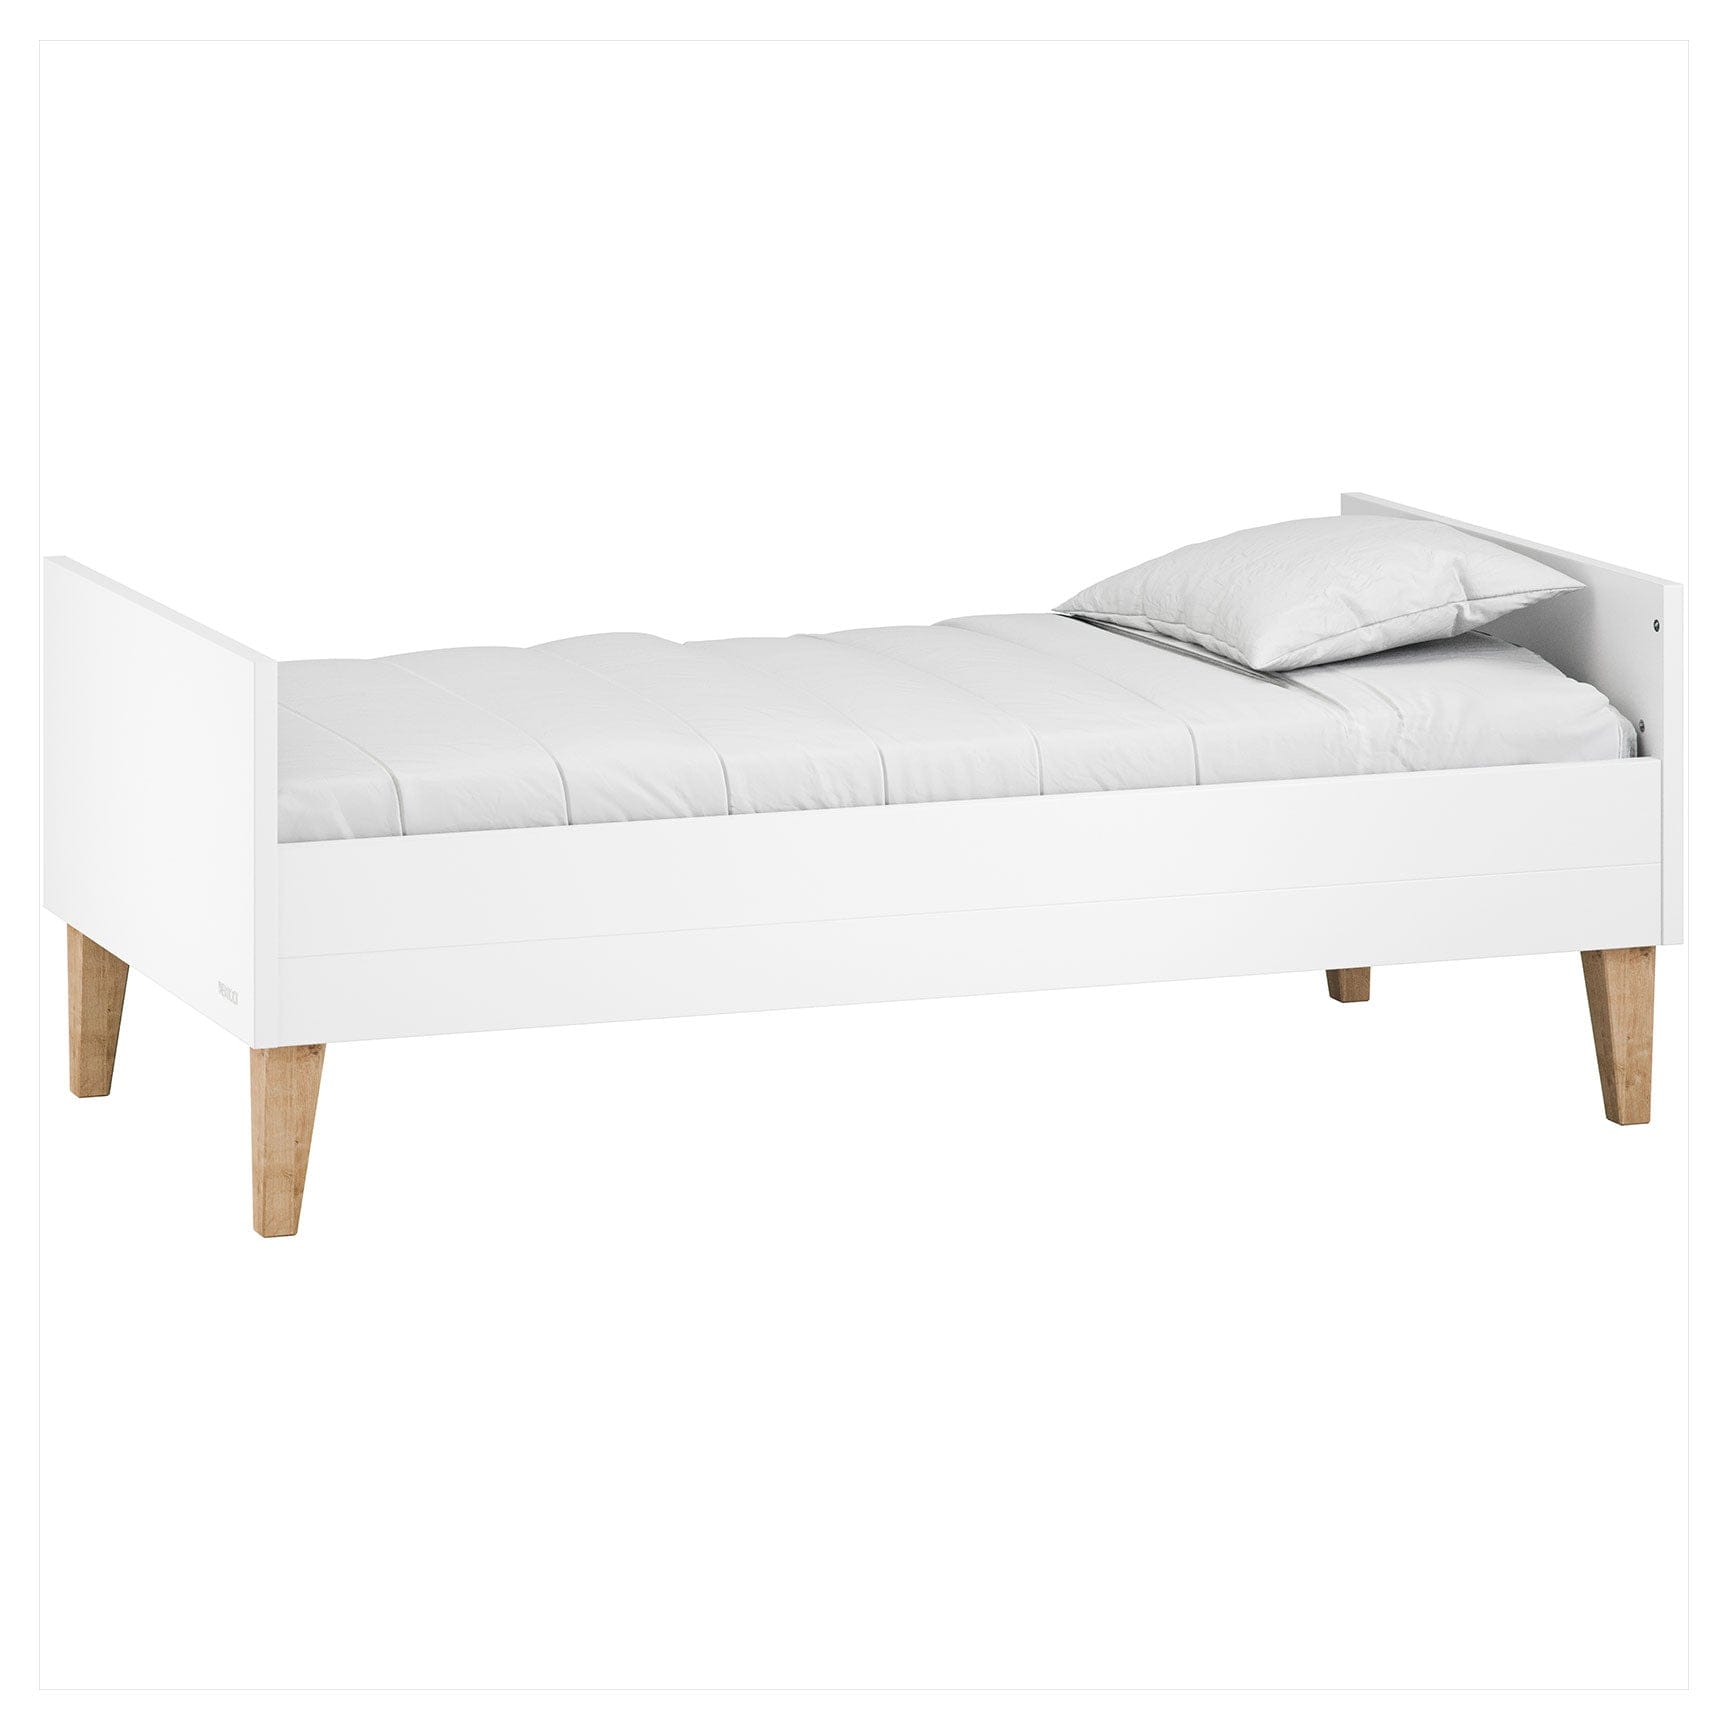 Venicci Cot Beds Venicci Saluzzo Graphite Cot Bed in Premium White